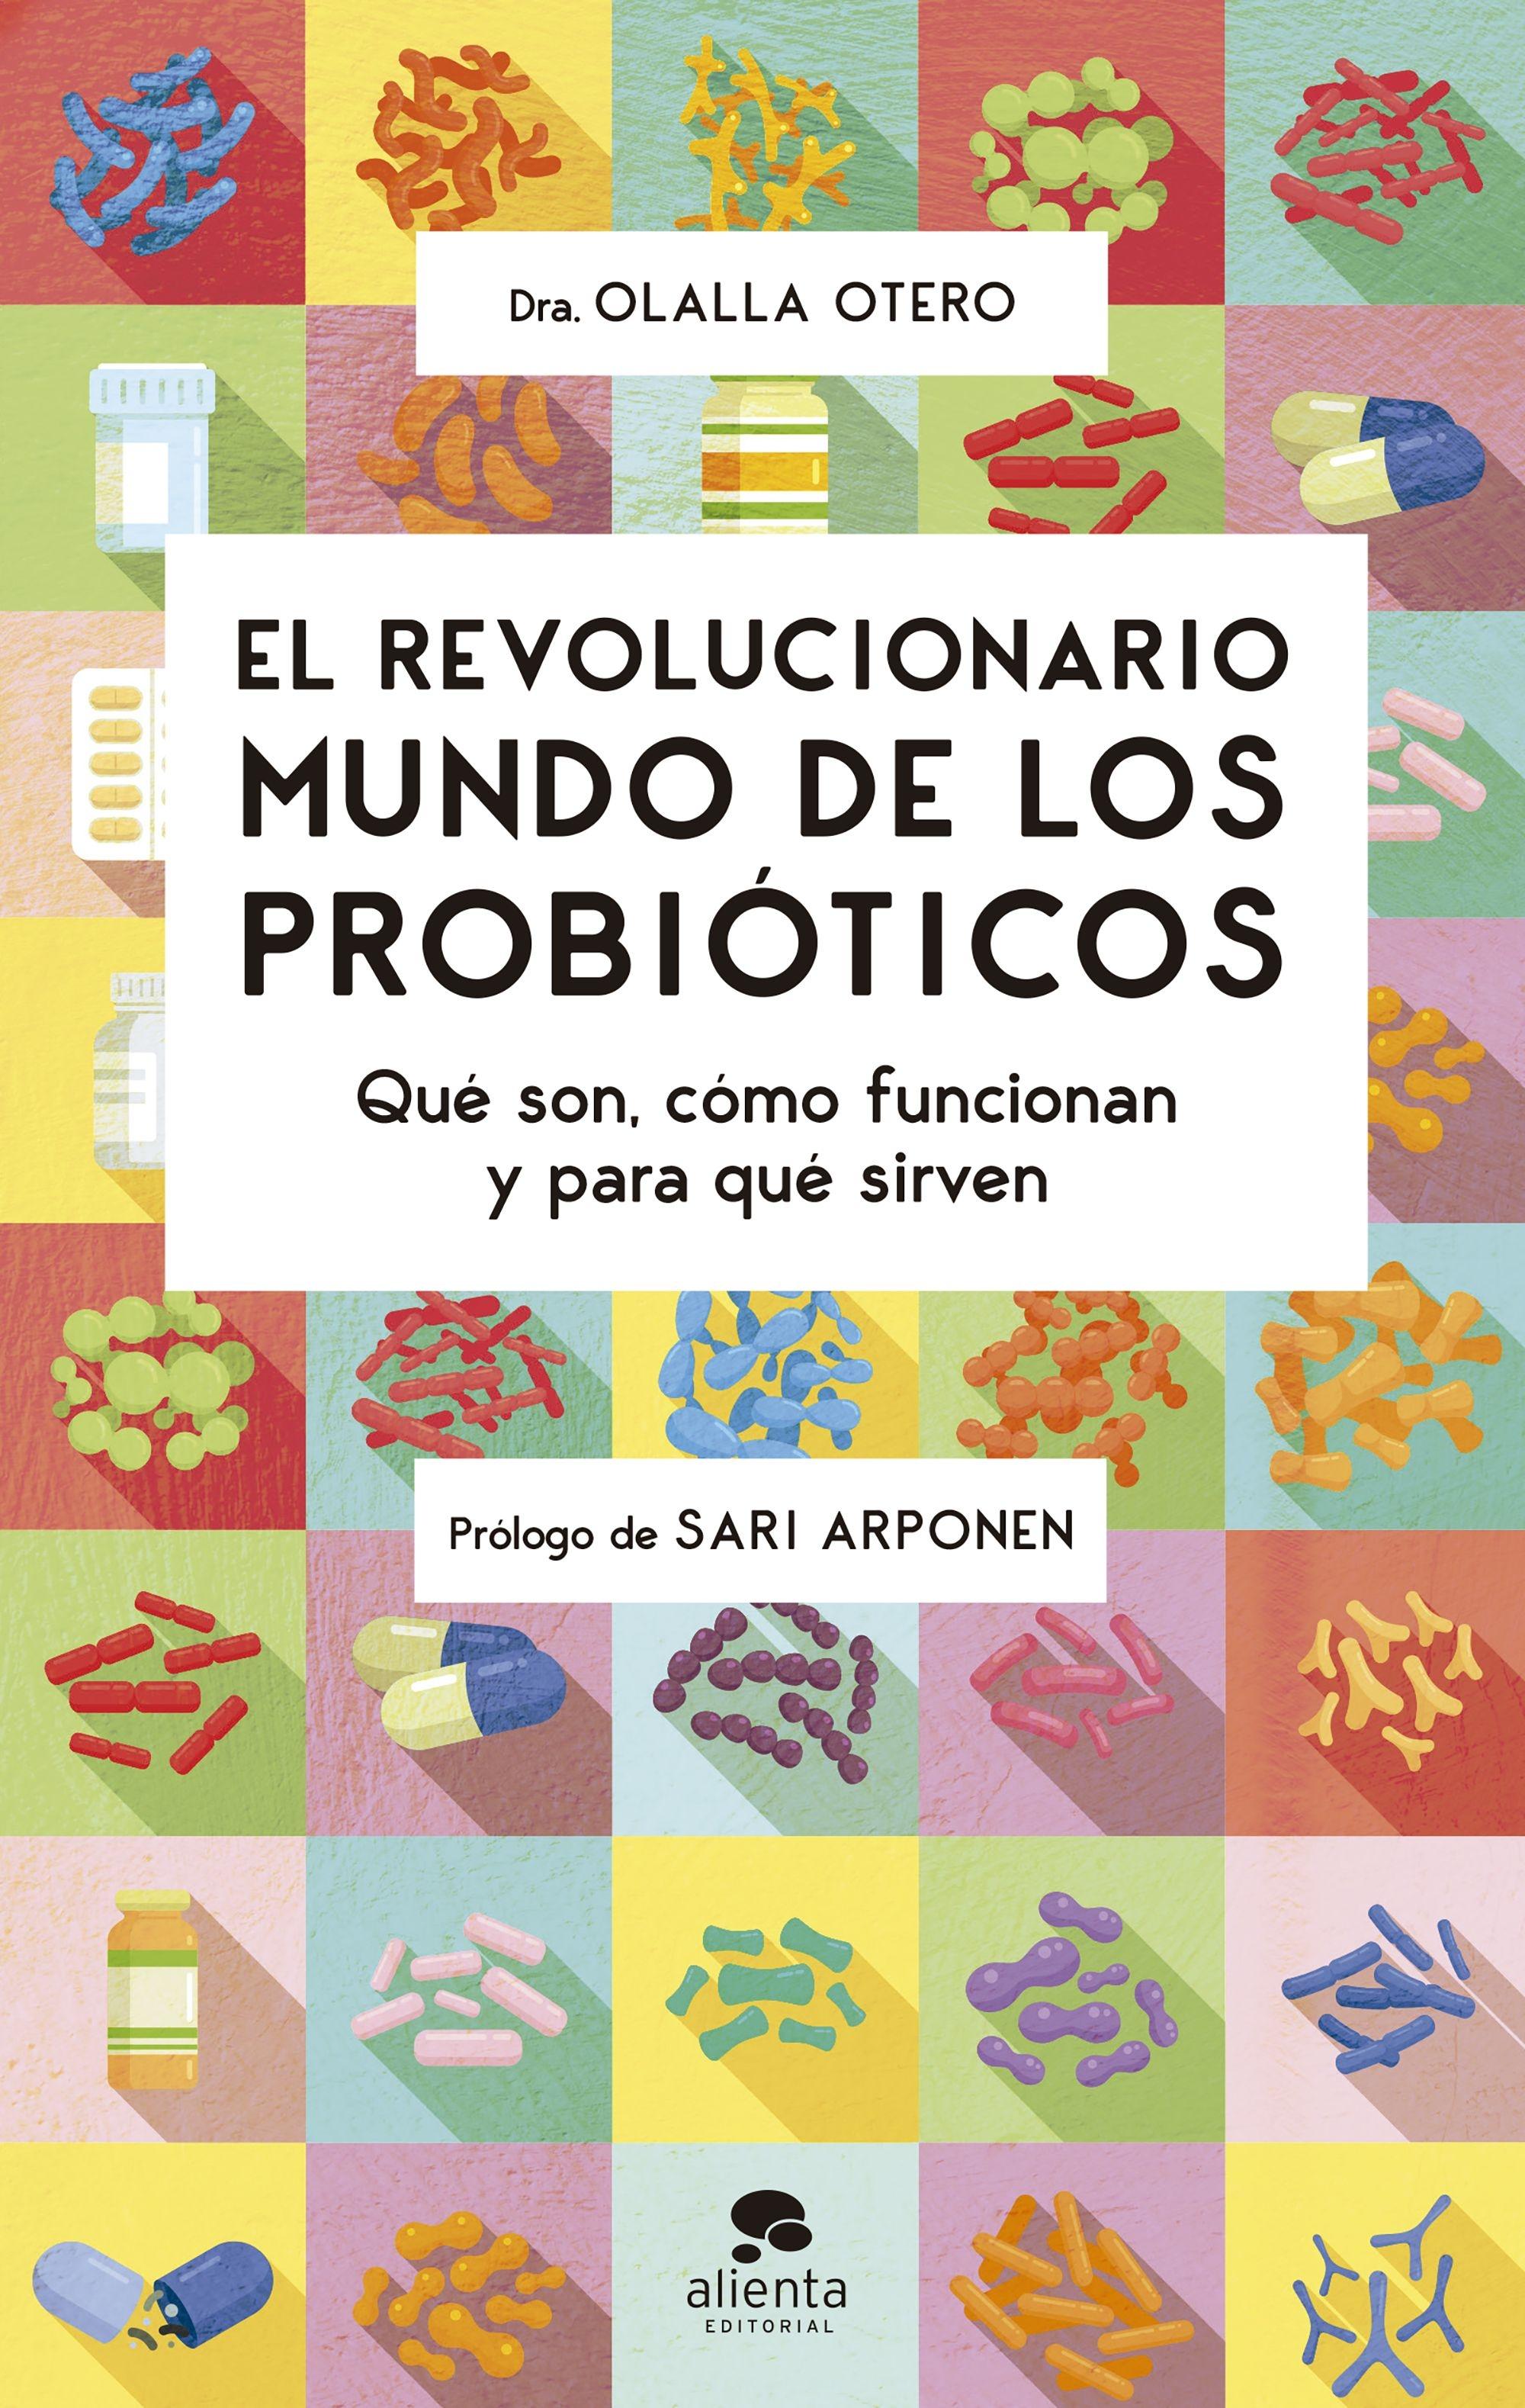 El revolucionario mundo de los probióticos "Qué son, cómo funcionan y para qué sirven"